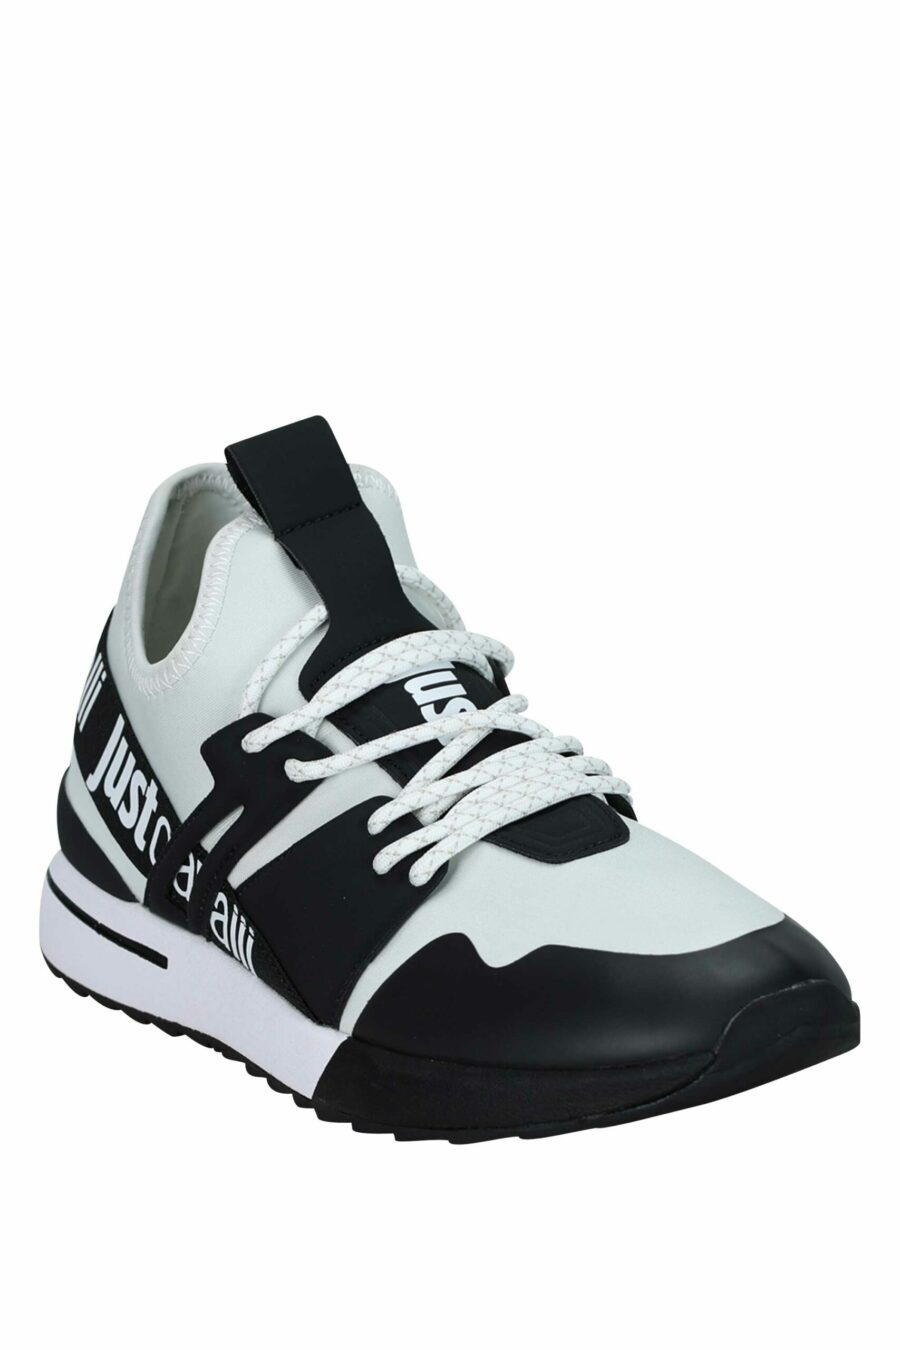 Zapatillas bicolor blancas y negras con logo en cinta - 8052672738127 1 scaled